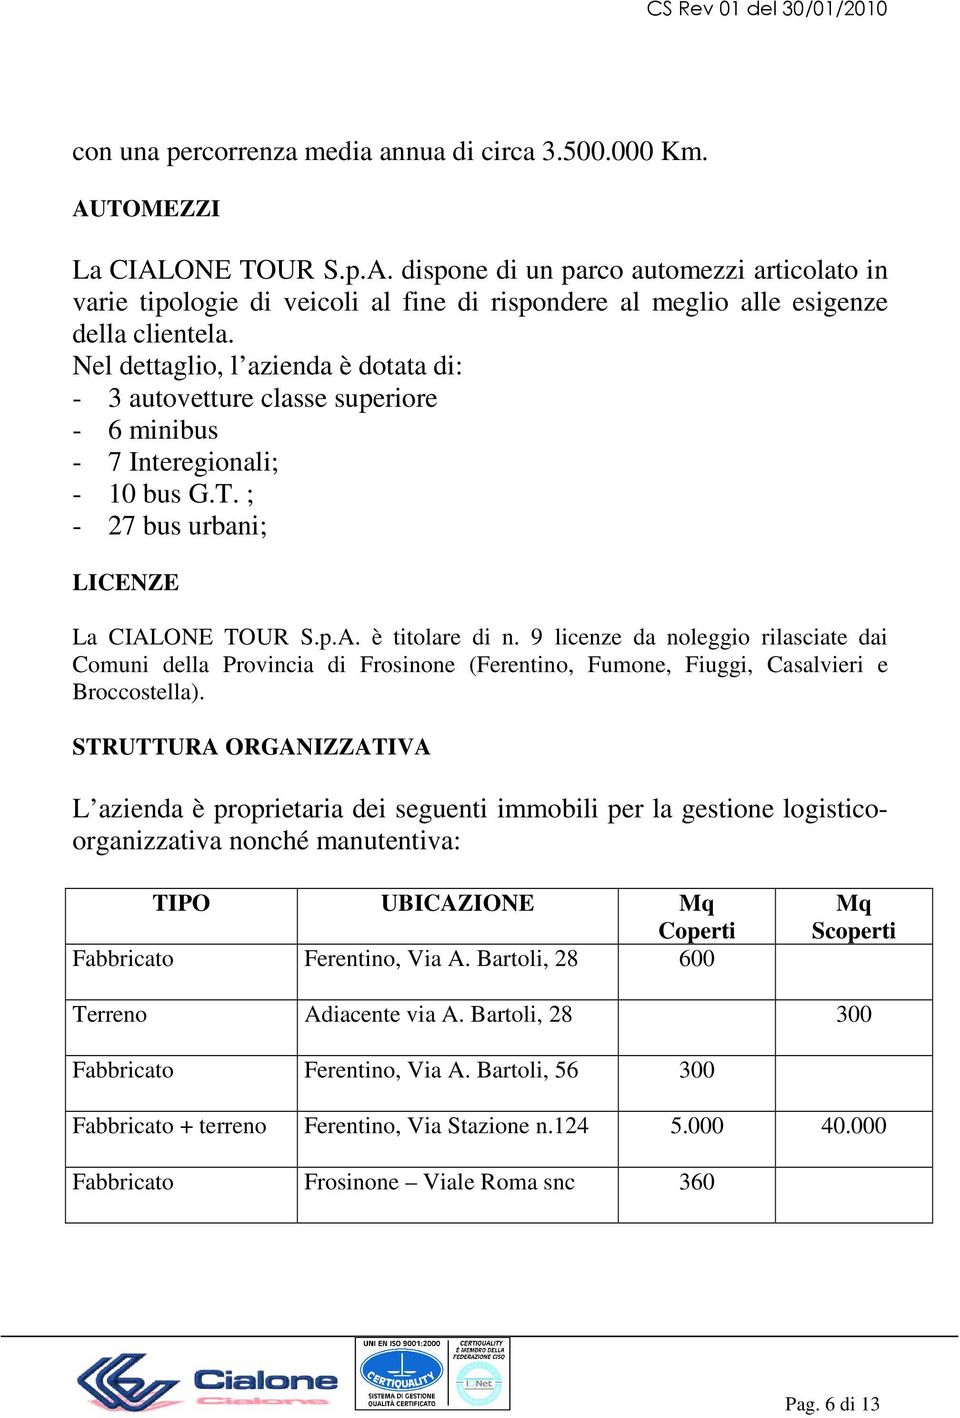 9 licenze da noleggio rilasciate dai Comuni della Provincia di Frosinone (Ferentino, Fumone, Fiuggi, Casalvieri e Broccostella).